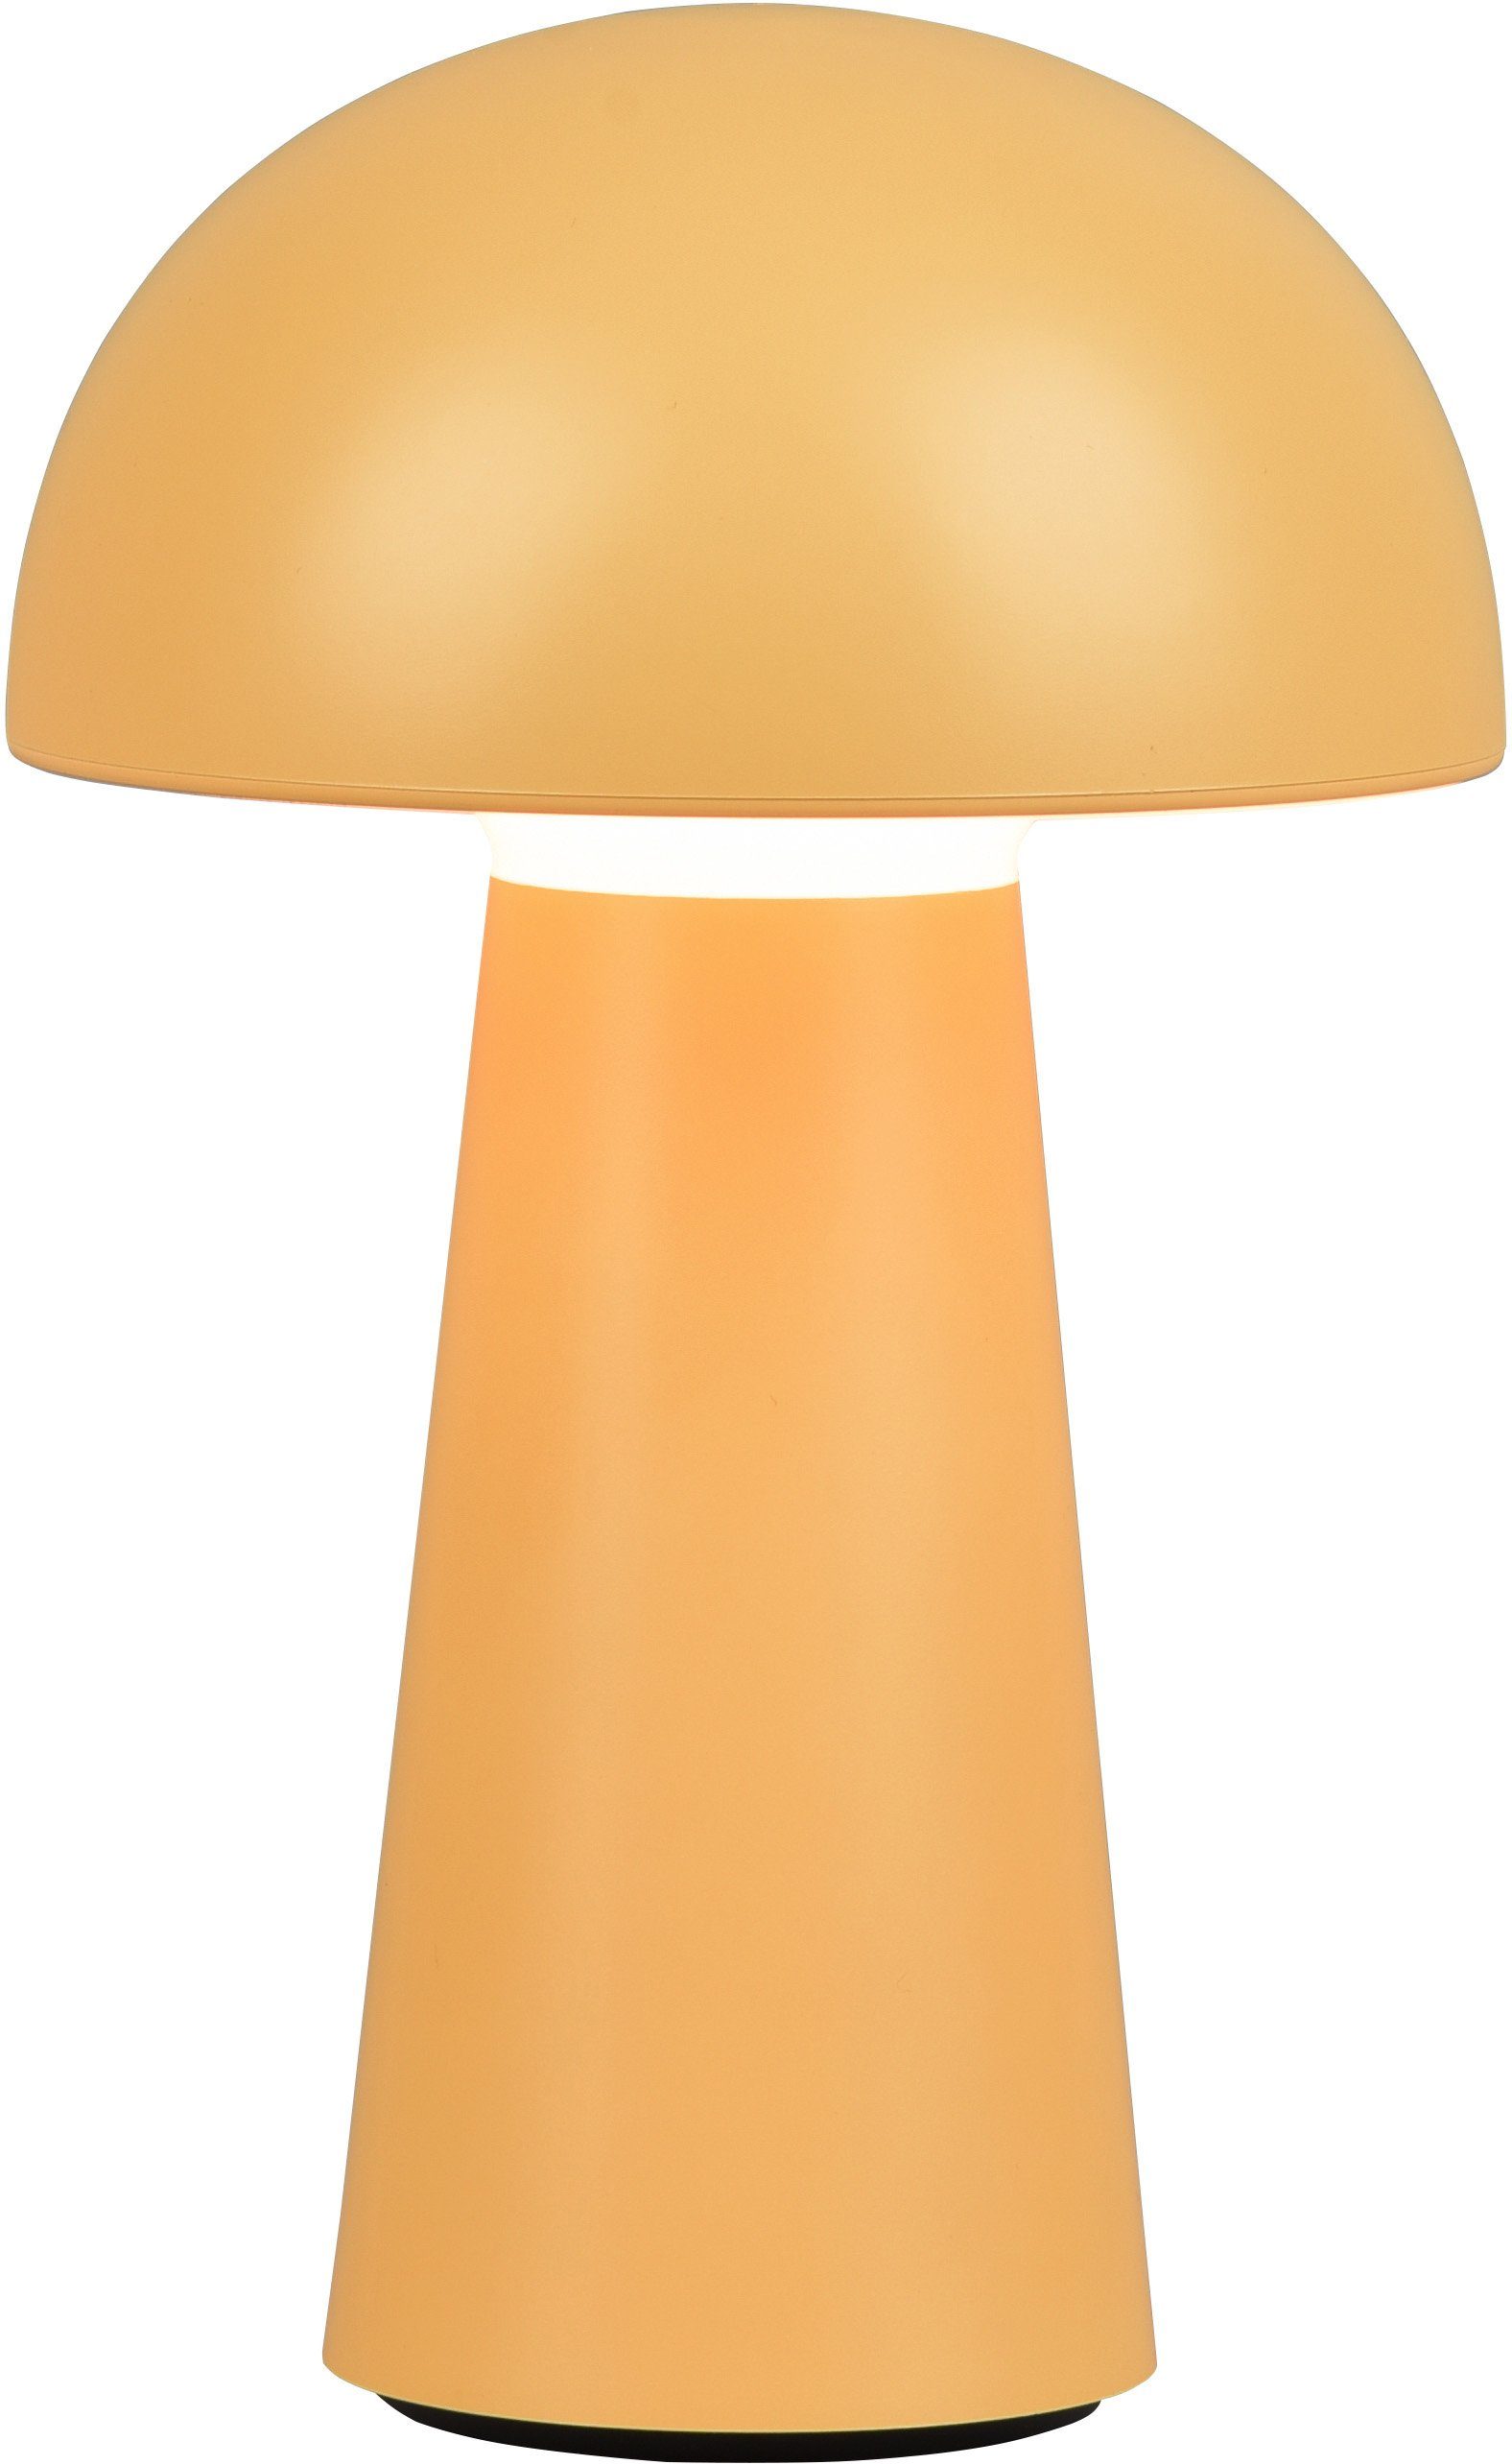 Outdoor gelb TRIO Tischlampe, Lennon, Touchdimmer, Leuchten Dimmfunktion, Warmweiß, per integriert, LED 4-fach LED fest Ladefunktion LED IP44 Außen-Tischleuchte USB,